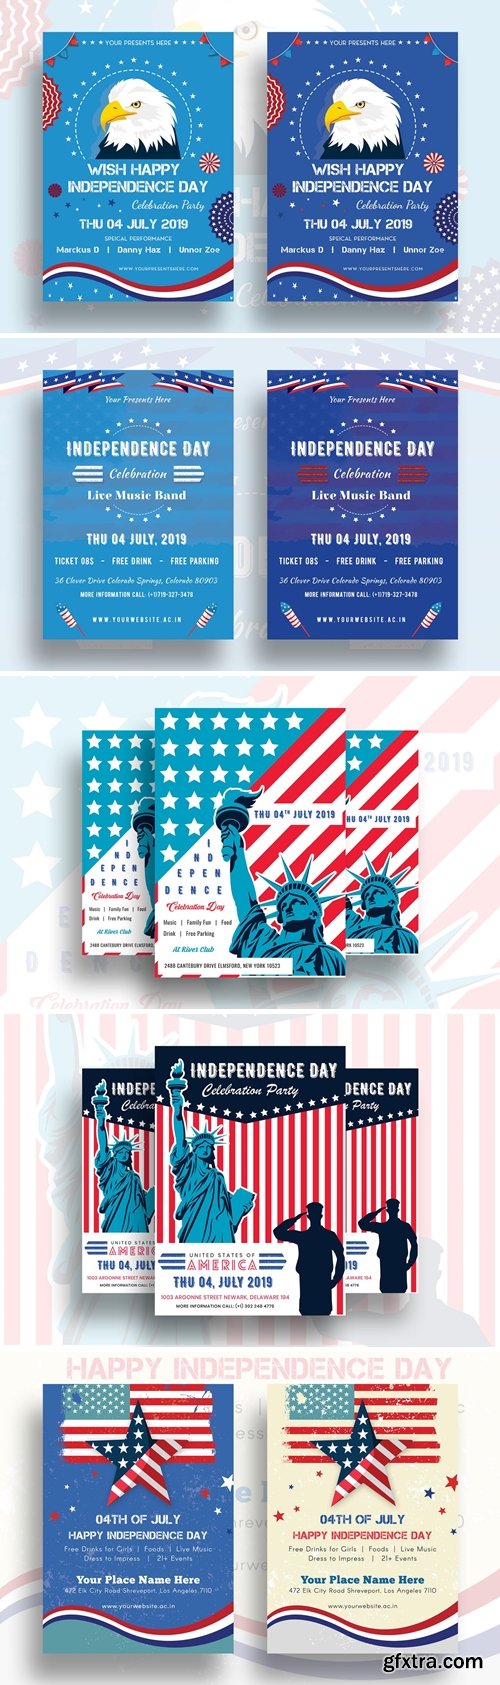 Independence Day Flyer Bundle